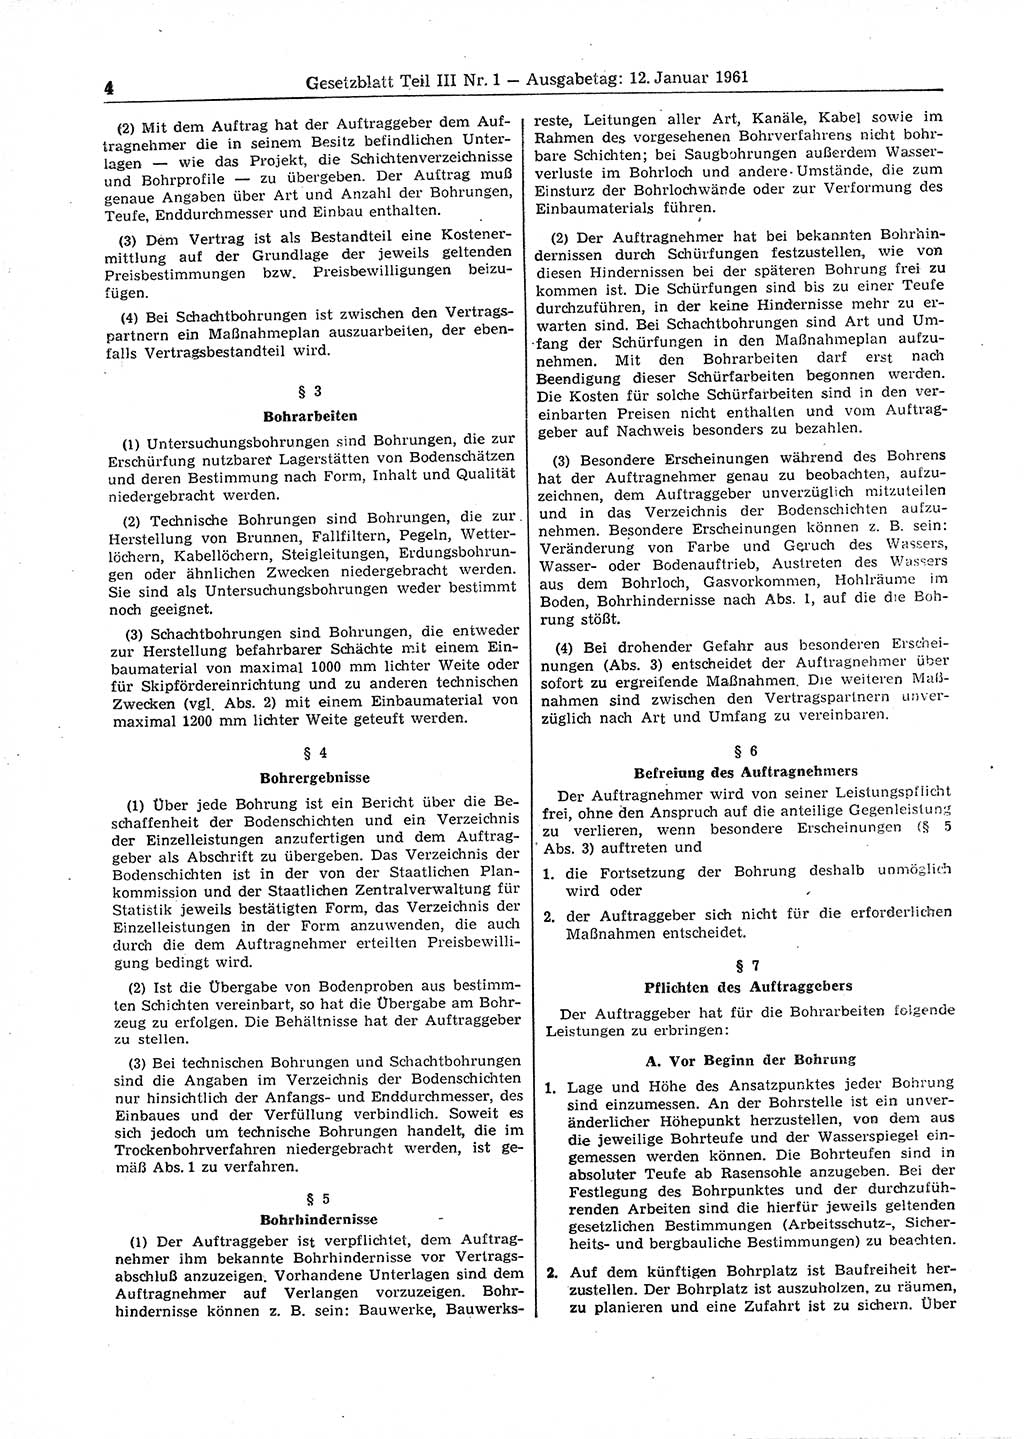 Gesetzblatt (GBl.) der Deutschen Demokratischen Republik (DDR) Teil ⅠⅠⅠ 1961, Seite 4 (GBl. DDR ⅠⅠⅠ 1961, S. 4)